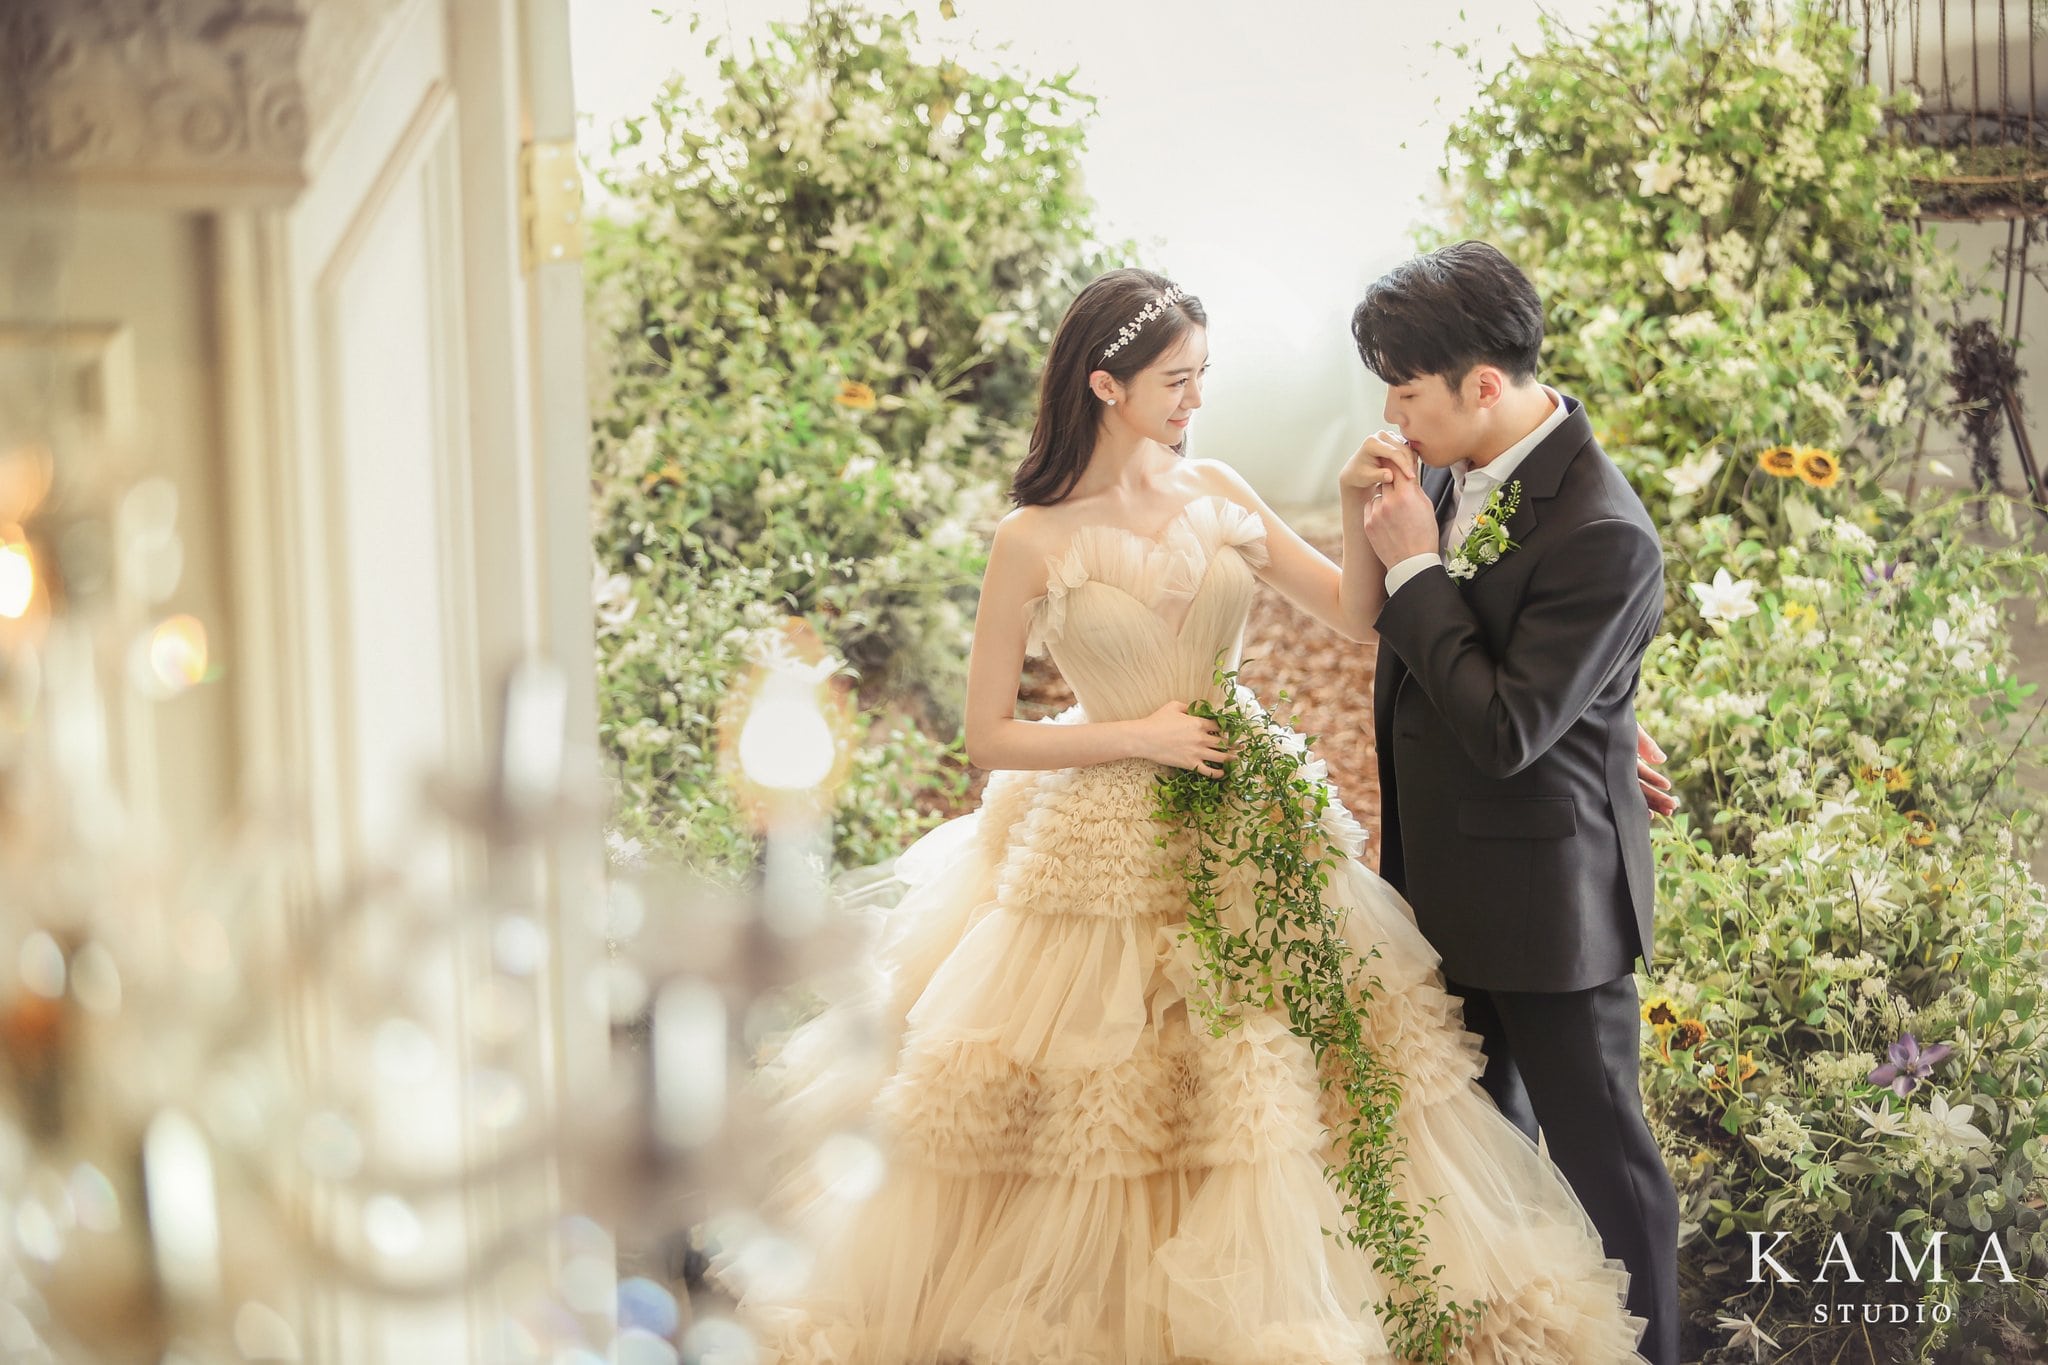 禹惠林和申敏哲结婚 在私人婚礼上结为夫妻